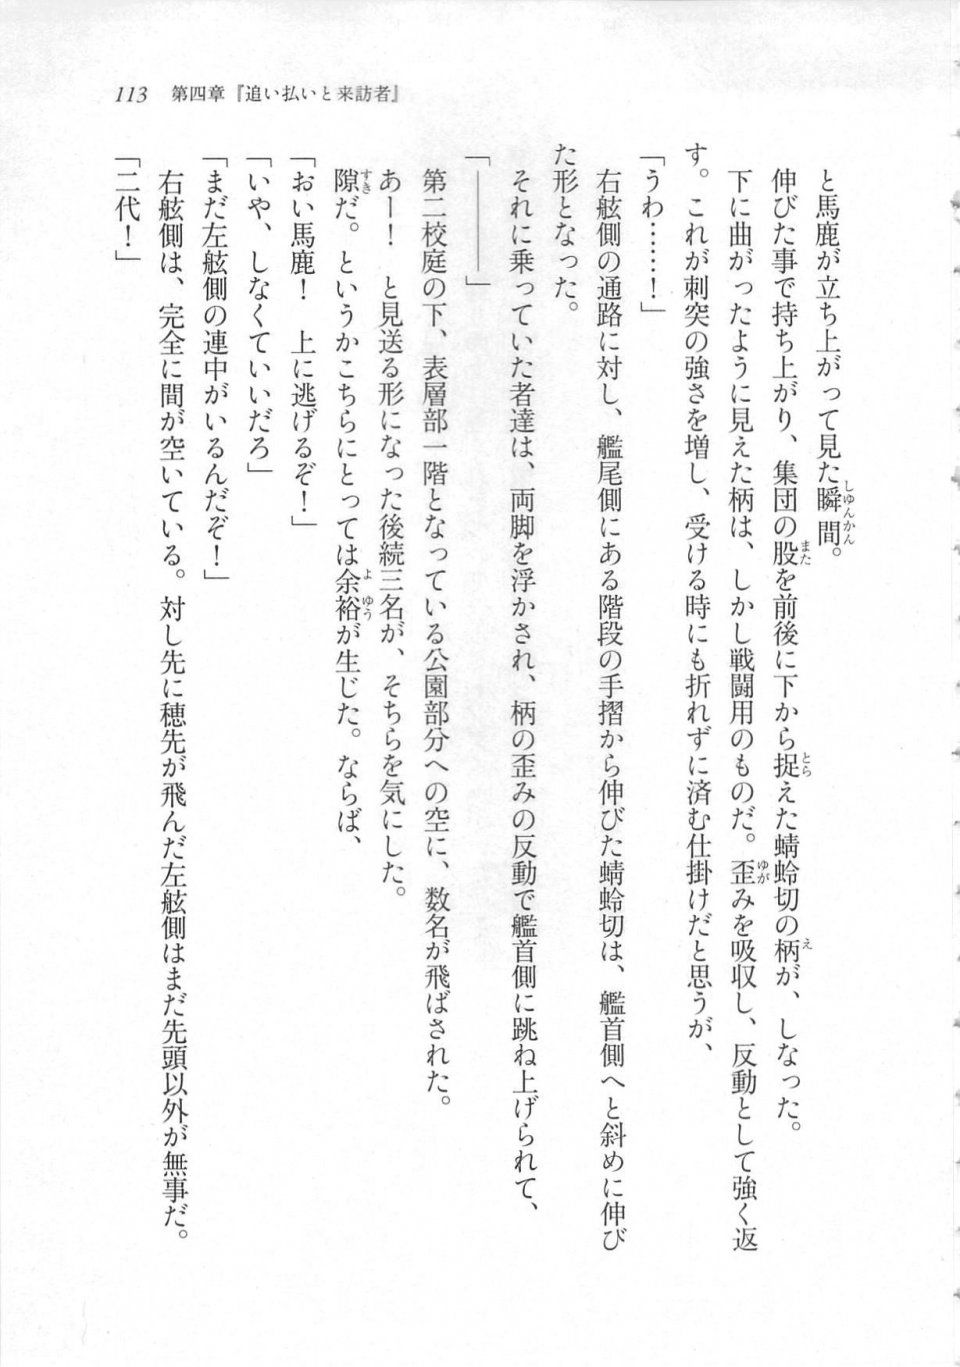 Kyoukai Senjou no Horizon LN Sidestory Vol 3 - Photo #117